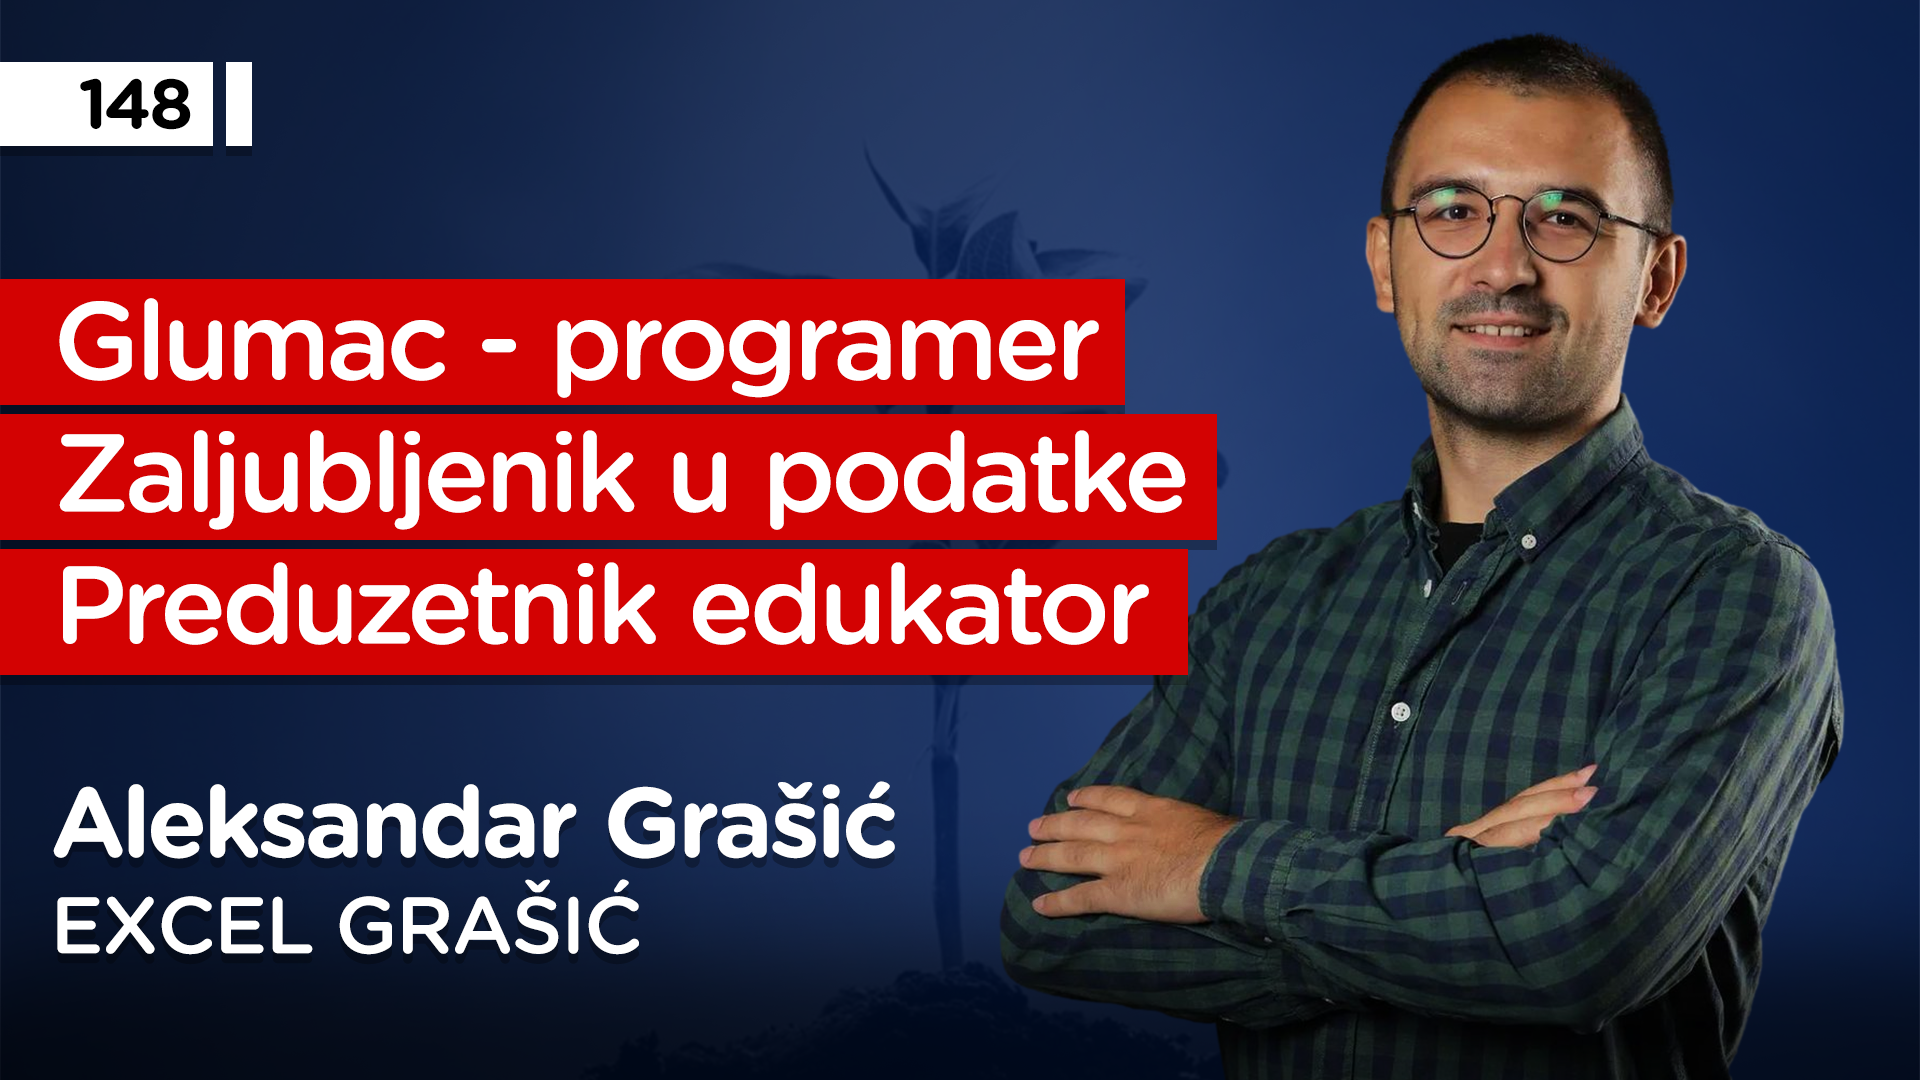 EP148: Aleksandar Grašić